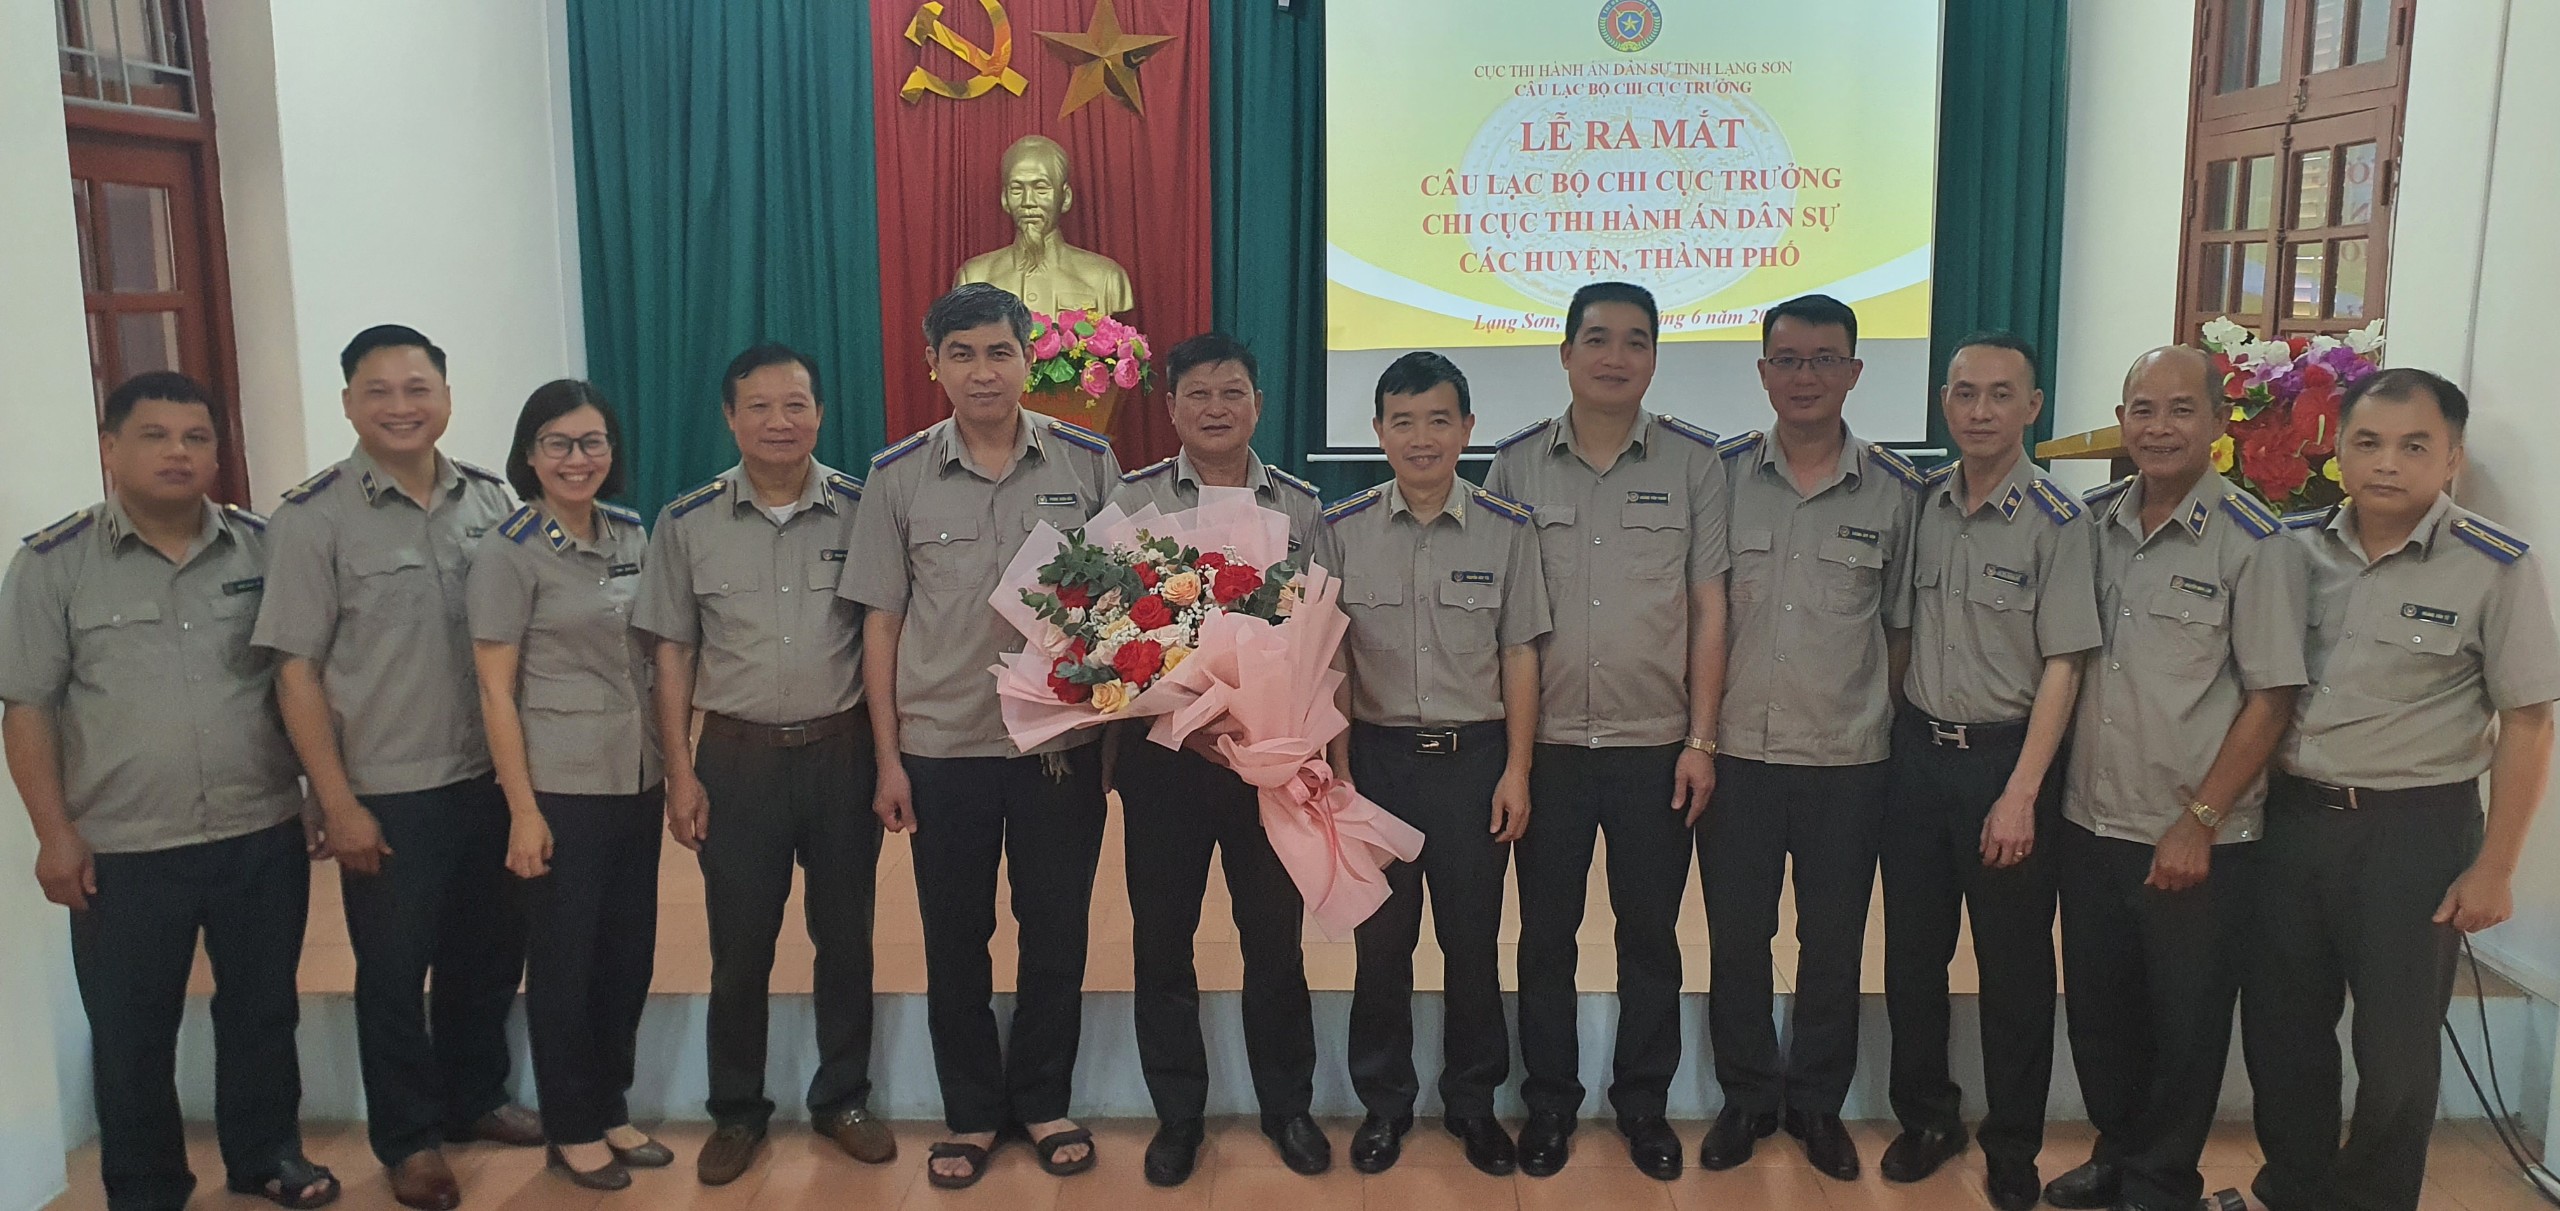 Lạng Sơn tổ chức Lễ ra mắt Câu lạc bộ Chi cục trưởng Chi cục THADS các huyện, thành phố